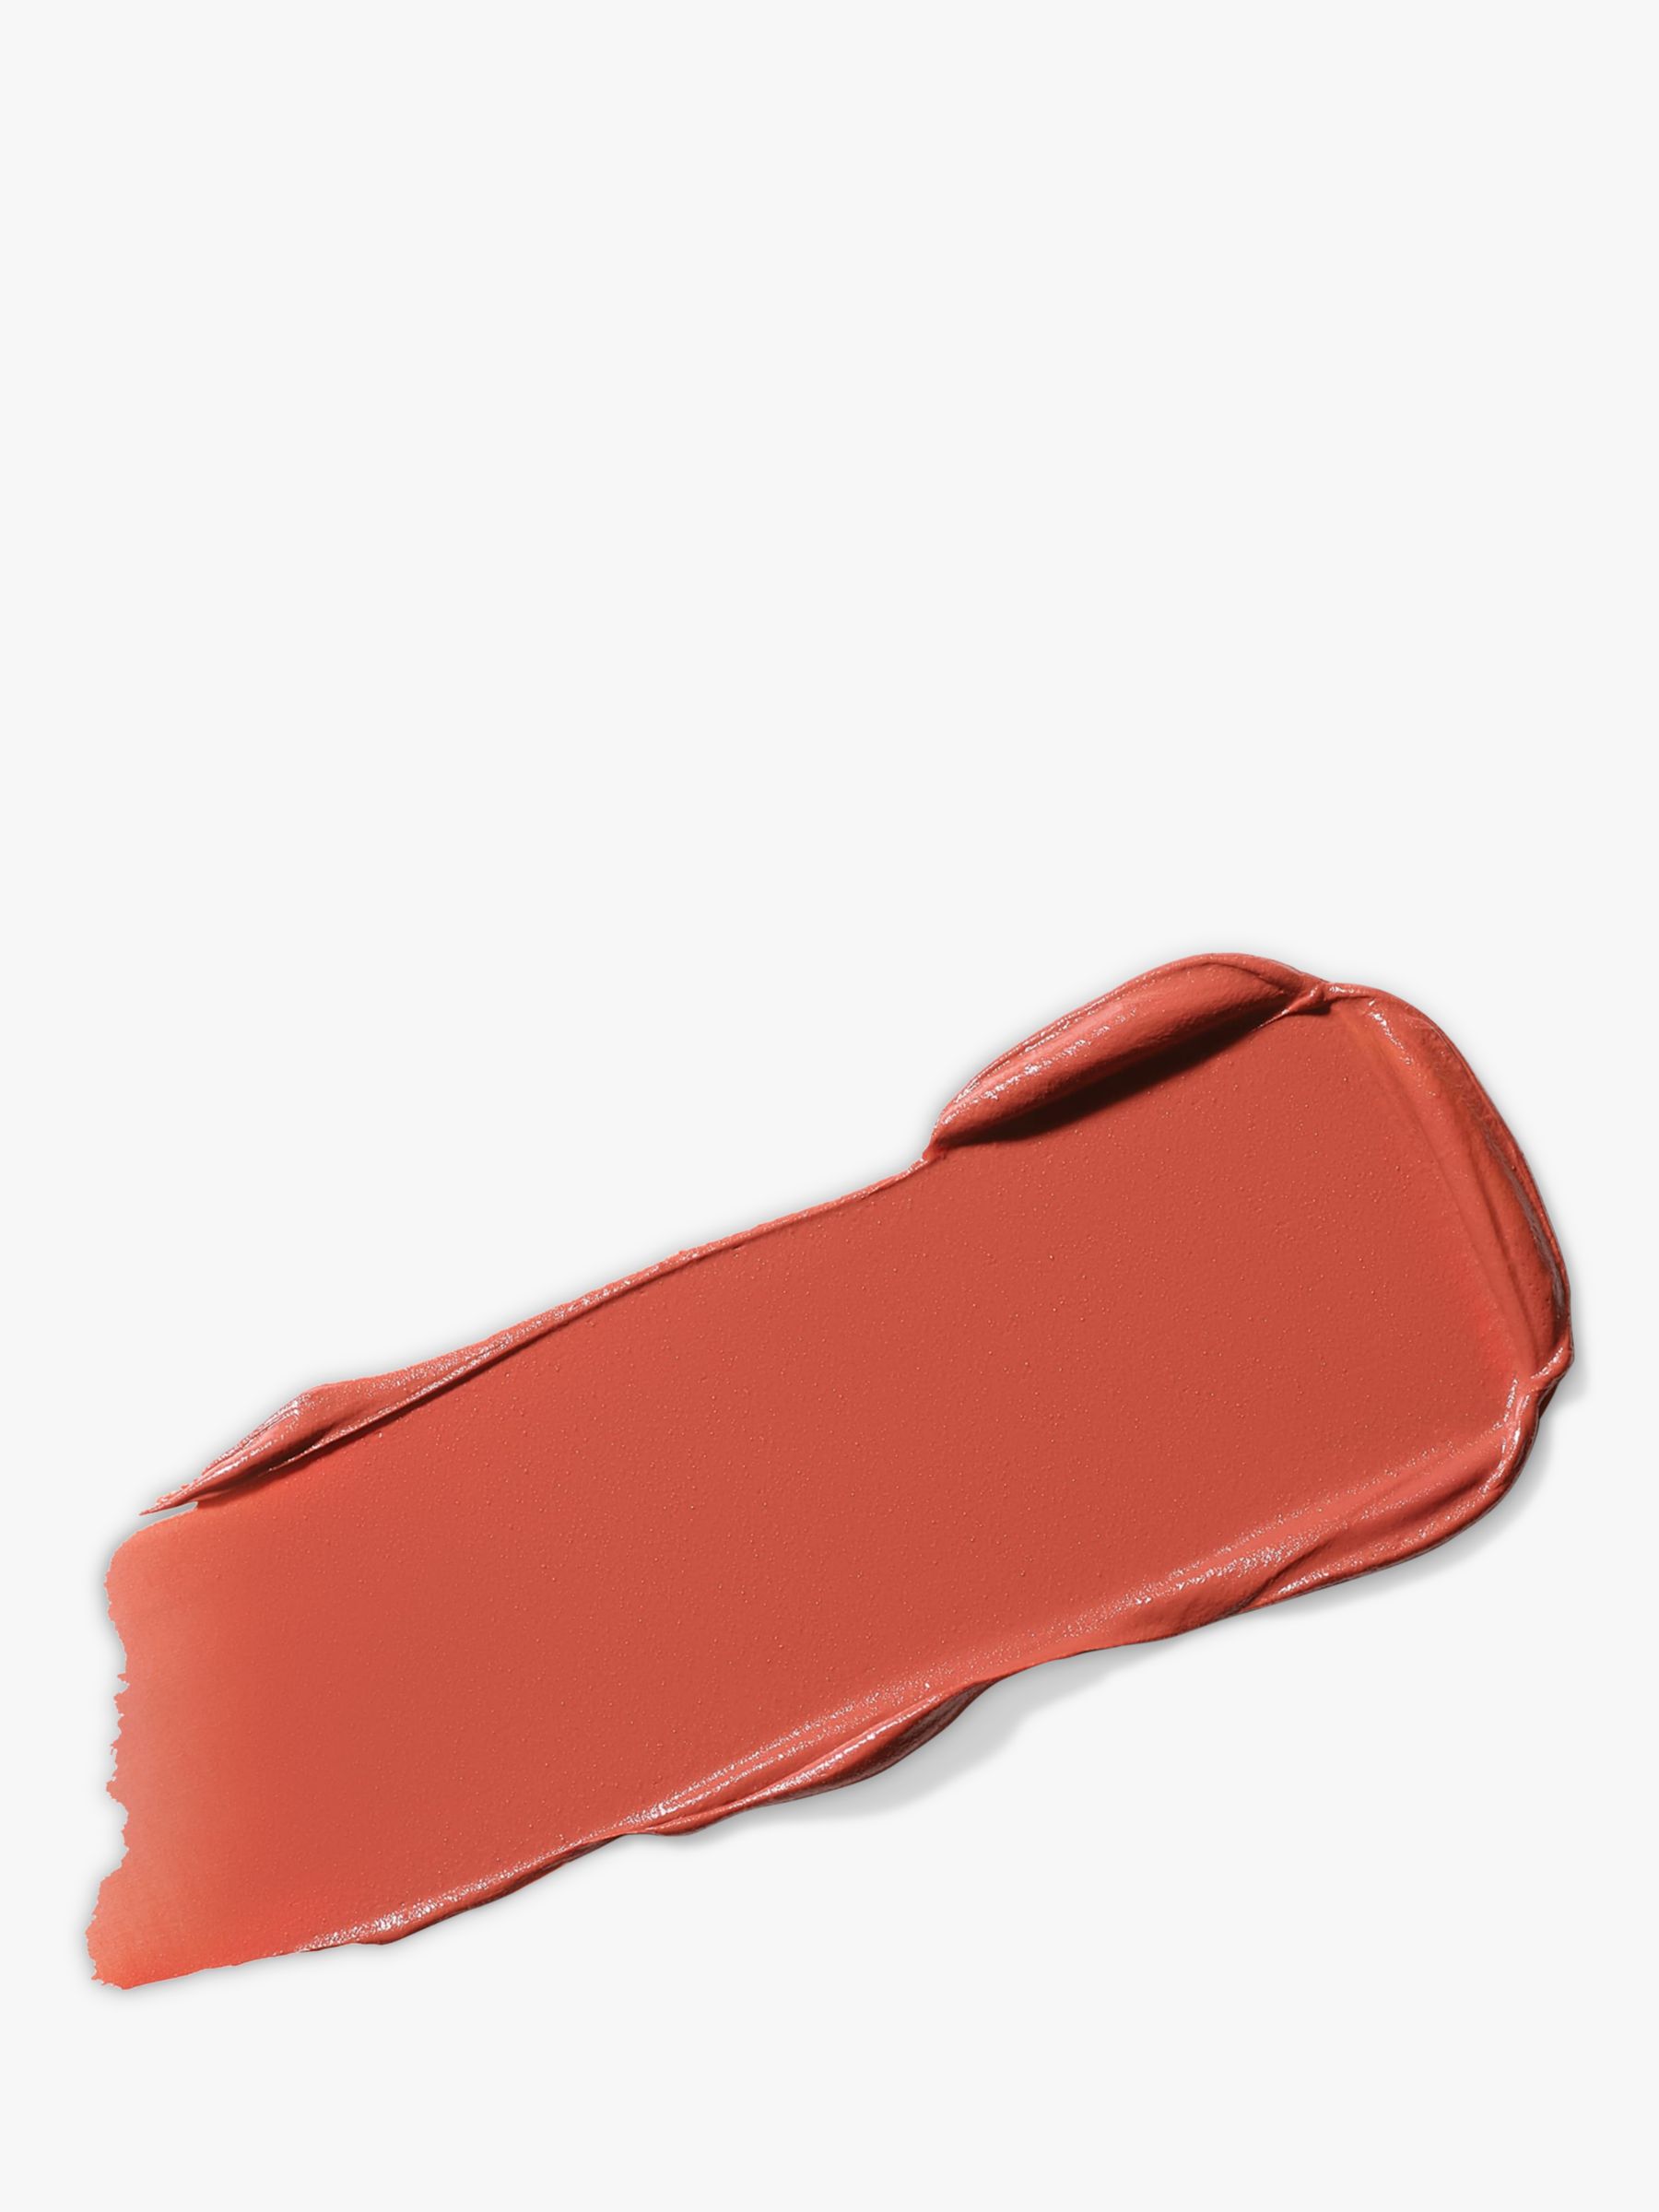 MAC Lipstick -  Powder Kiss Velvet Blur Slim Stick, Marrakesh-Mere 2